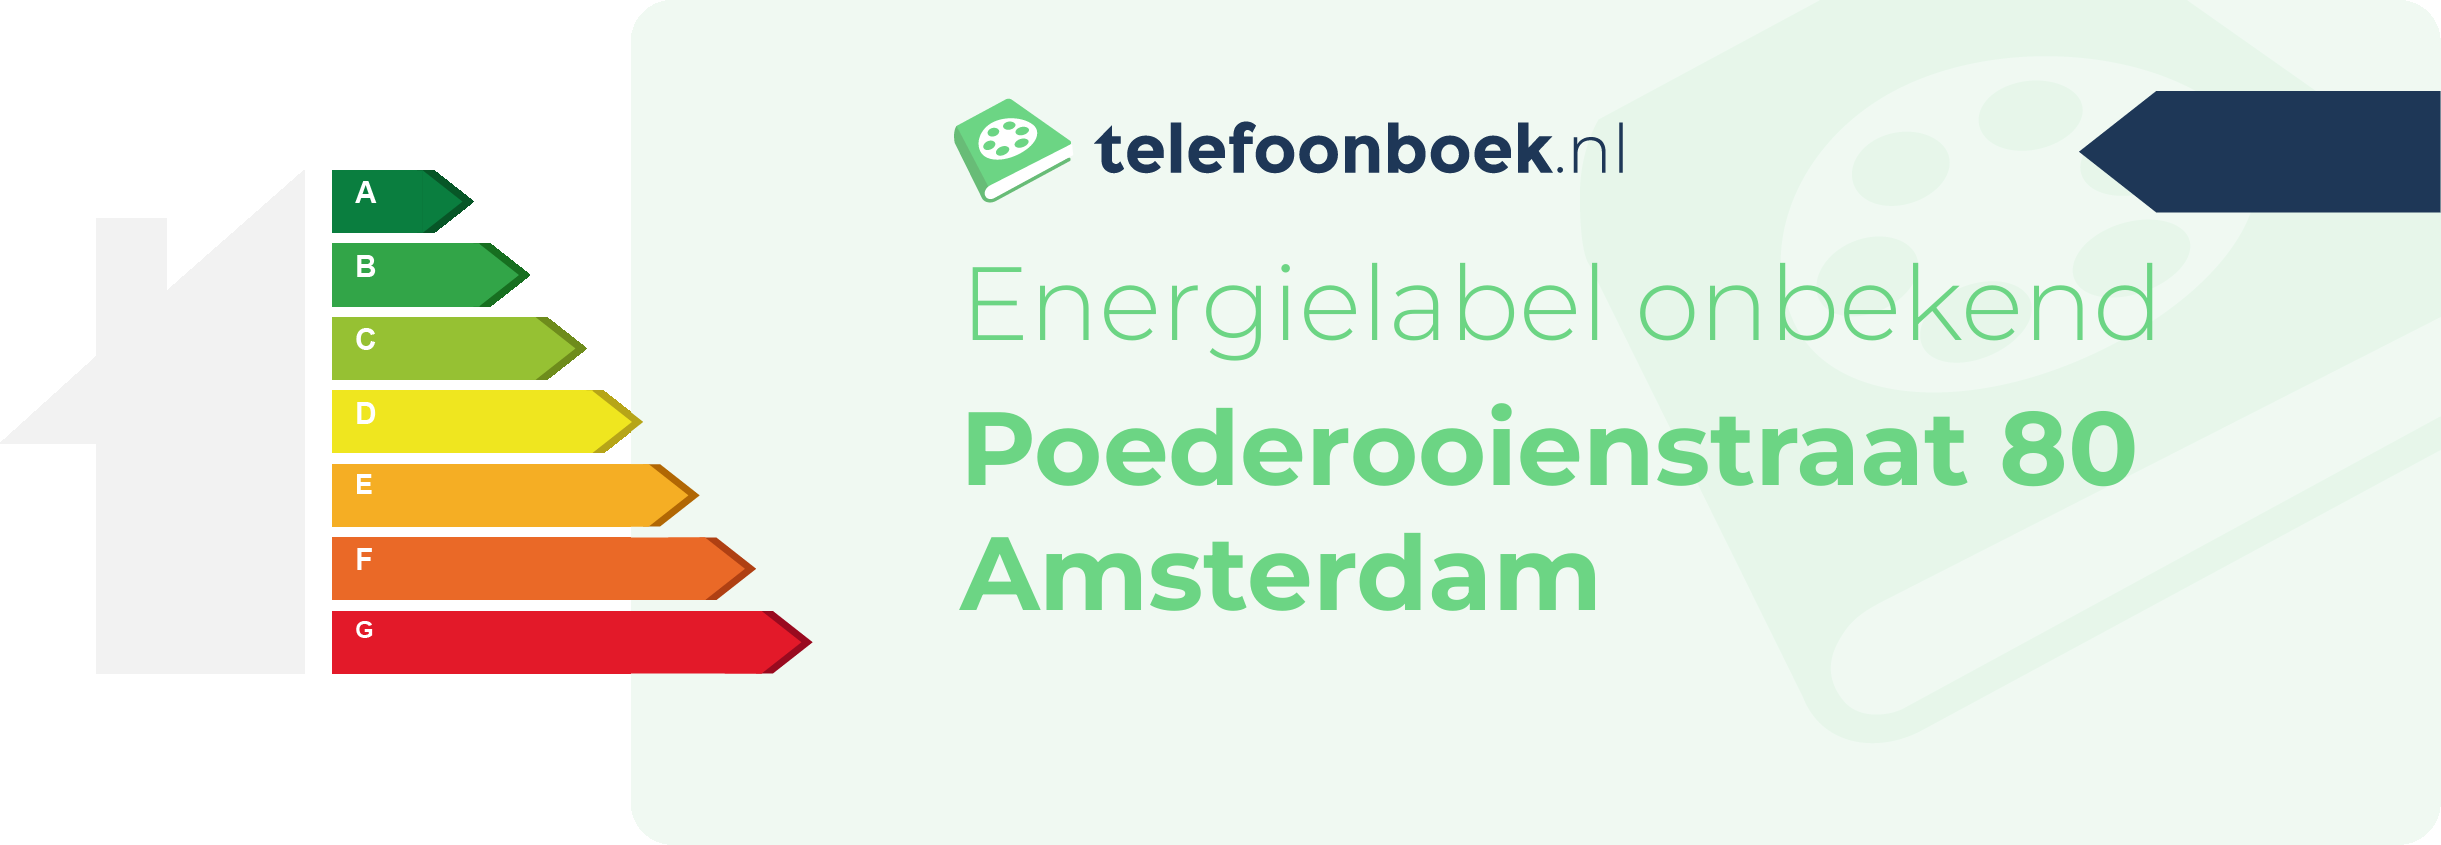 Energielabel Poederooienstraat 80 Amsterdam